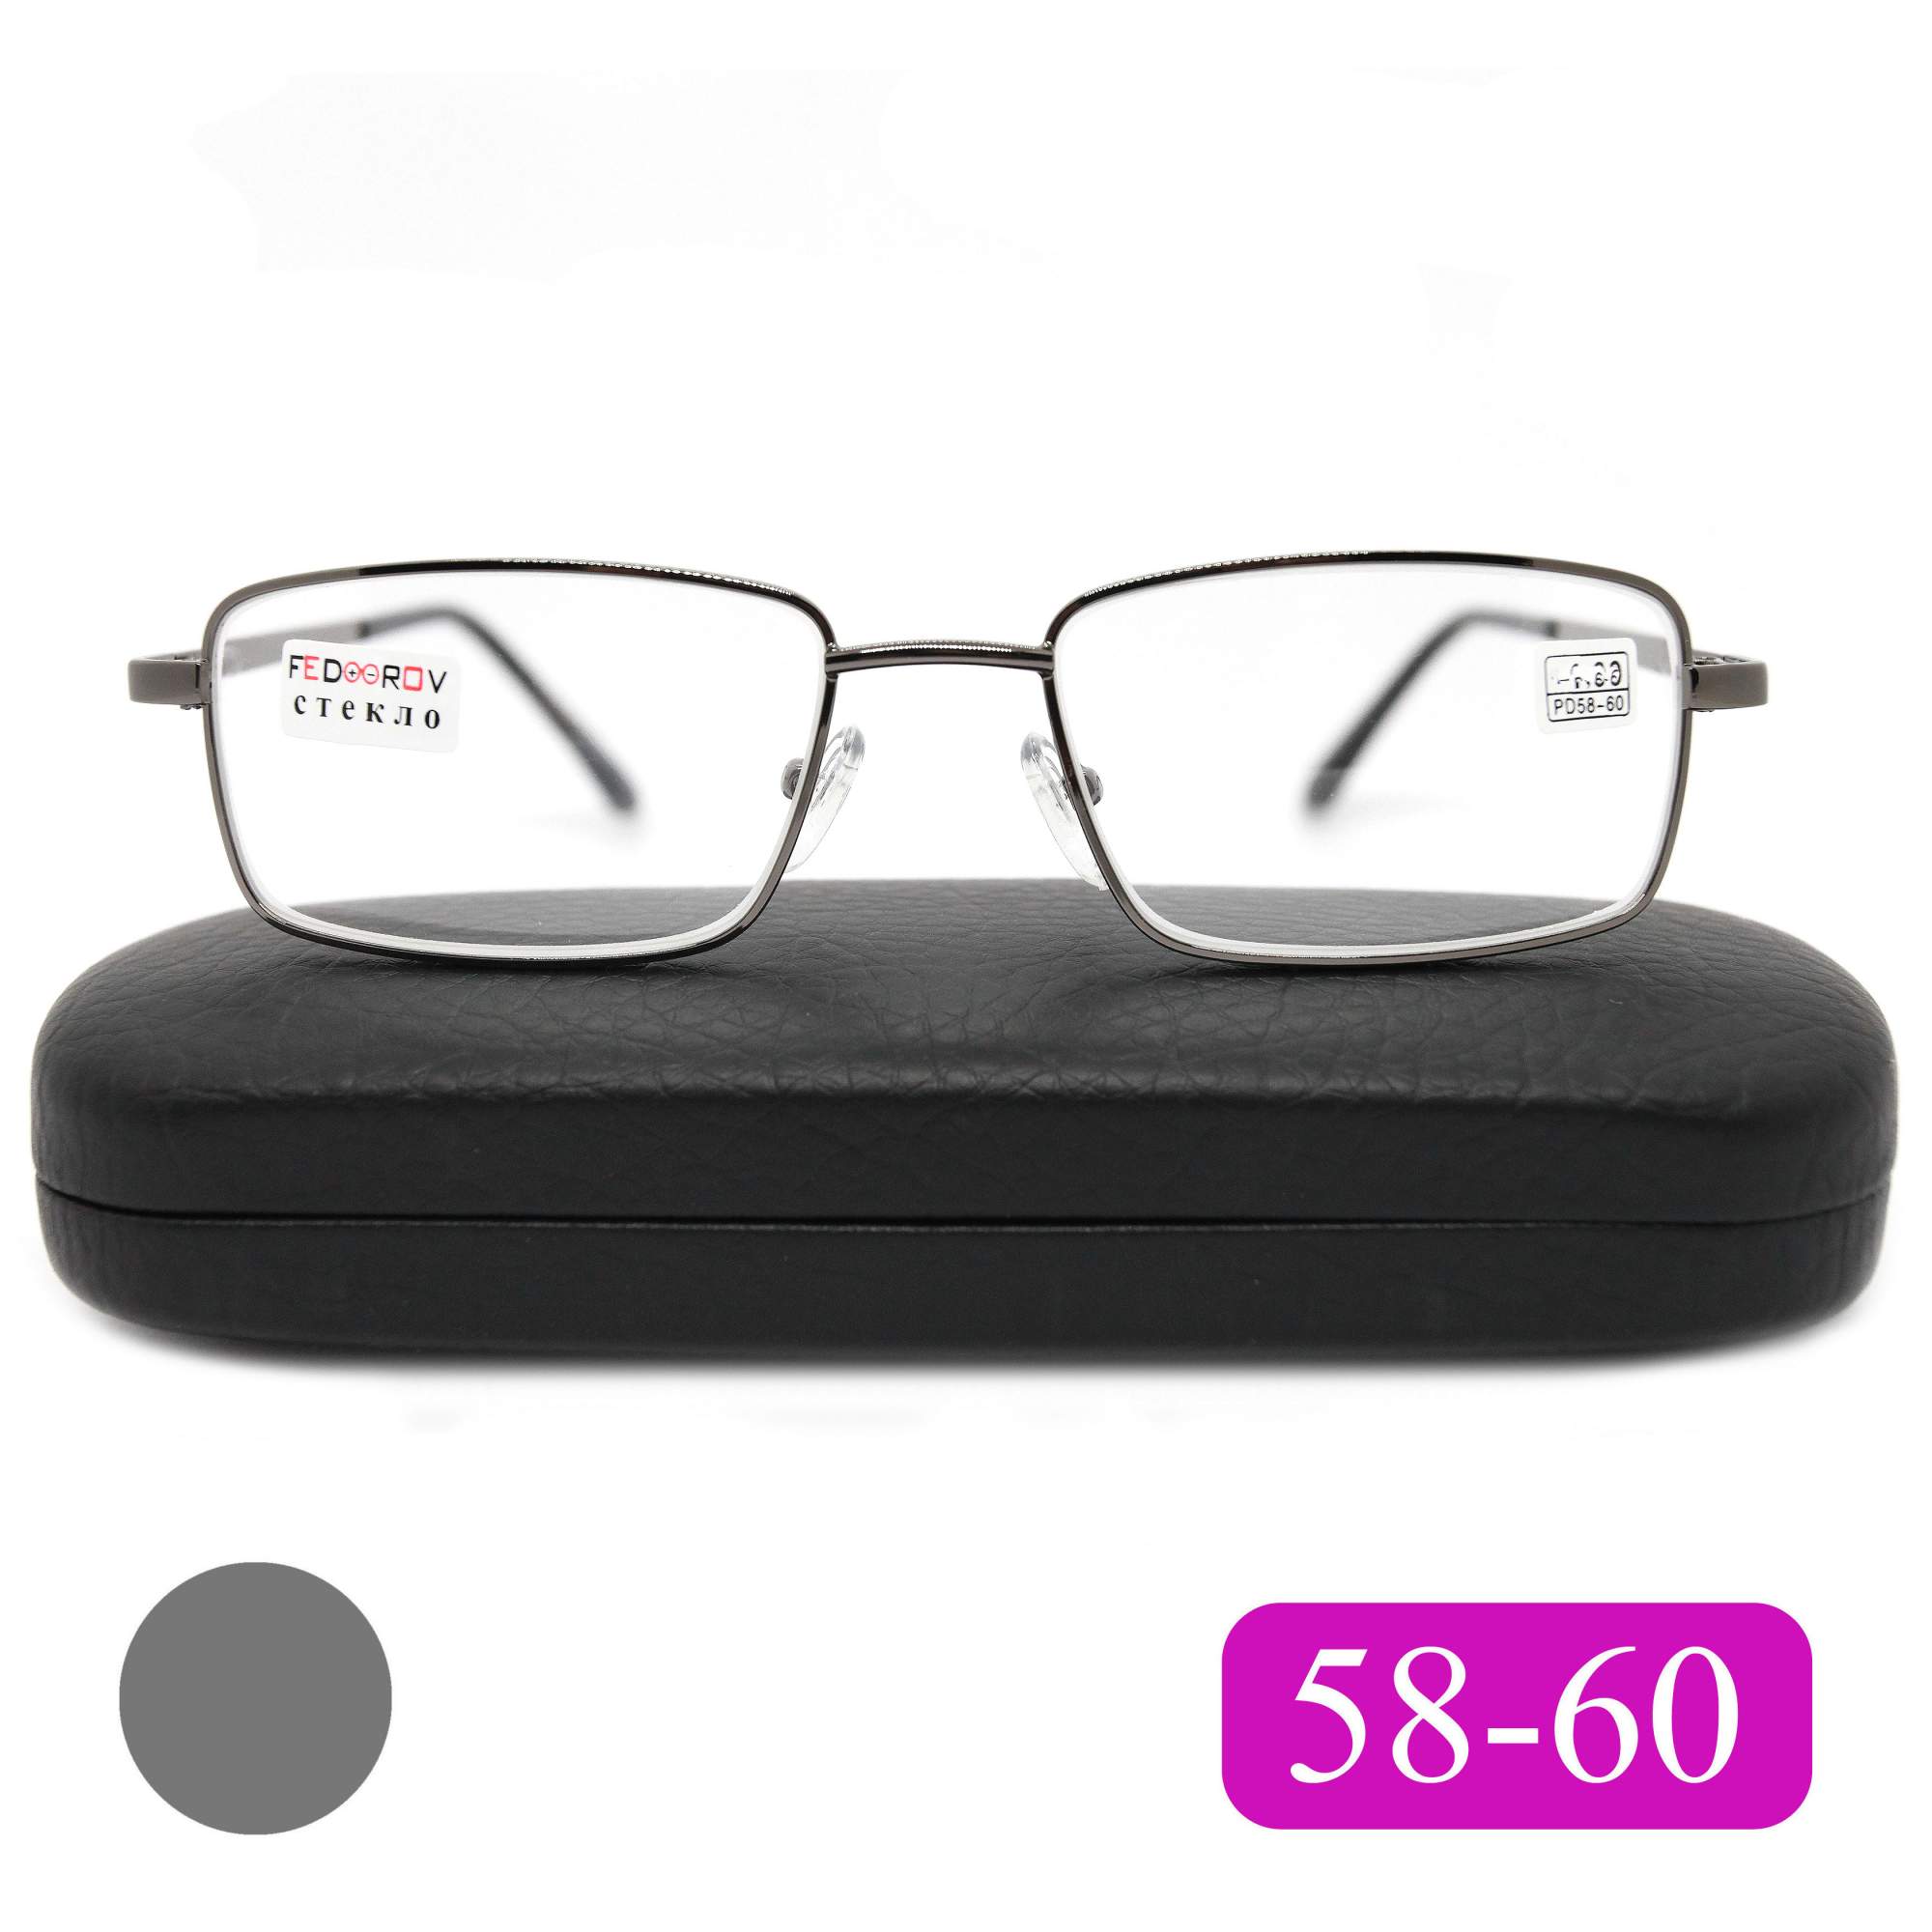 Готовые очки Fedrov 569, со стеклянной линзой, +4,00, c футляром, цвет серый, РЦ 58-60